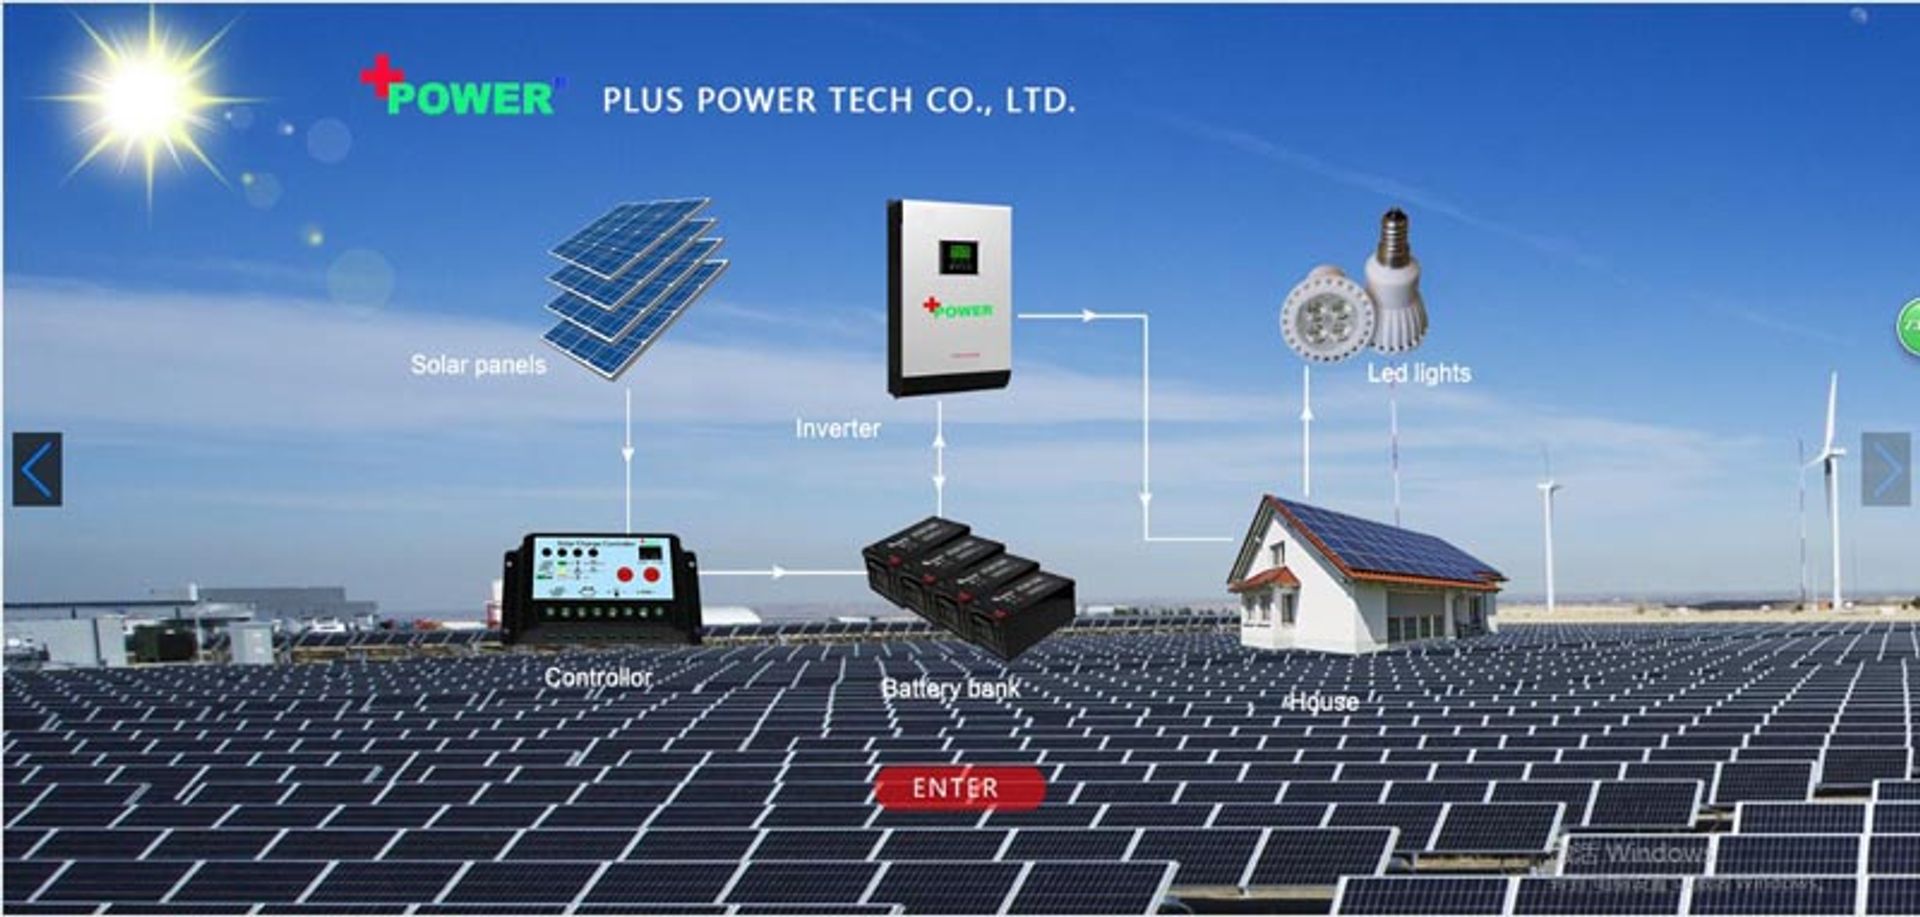 Plus Power Tech Co., Ltd.